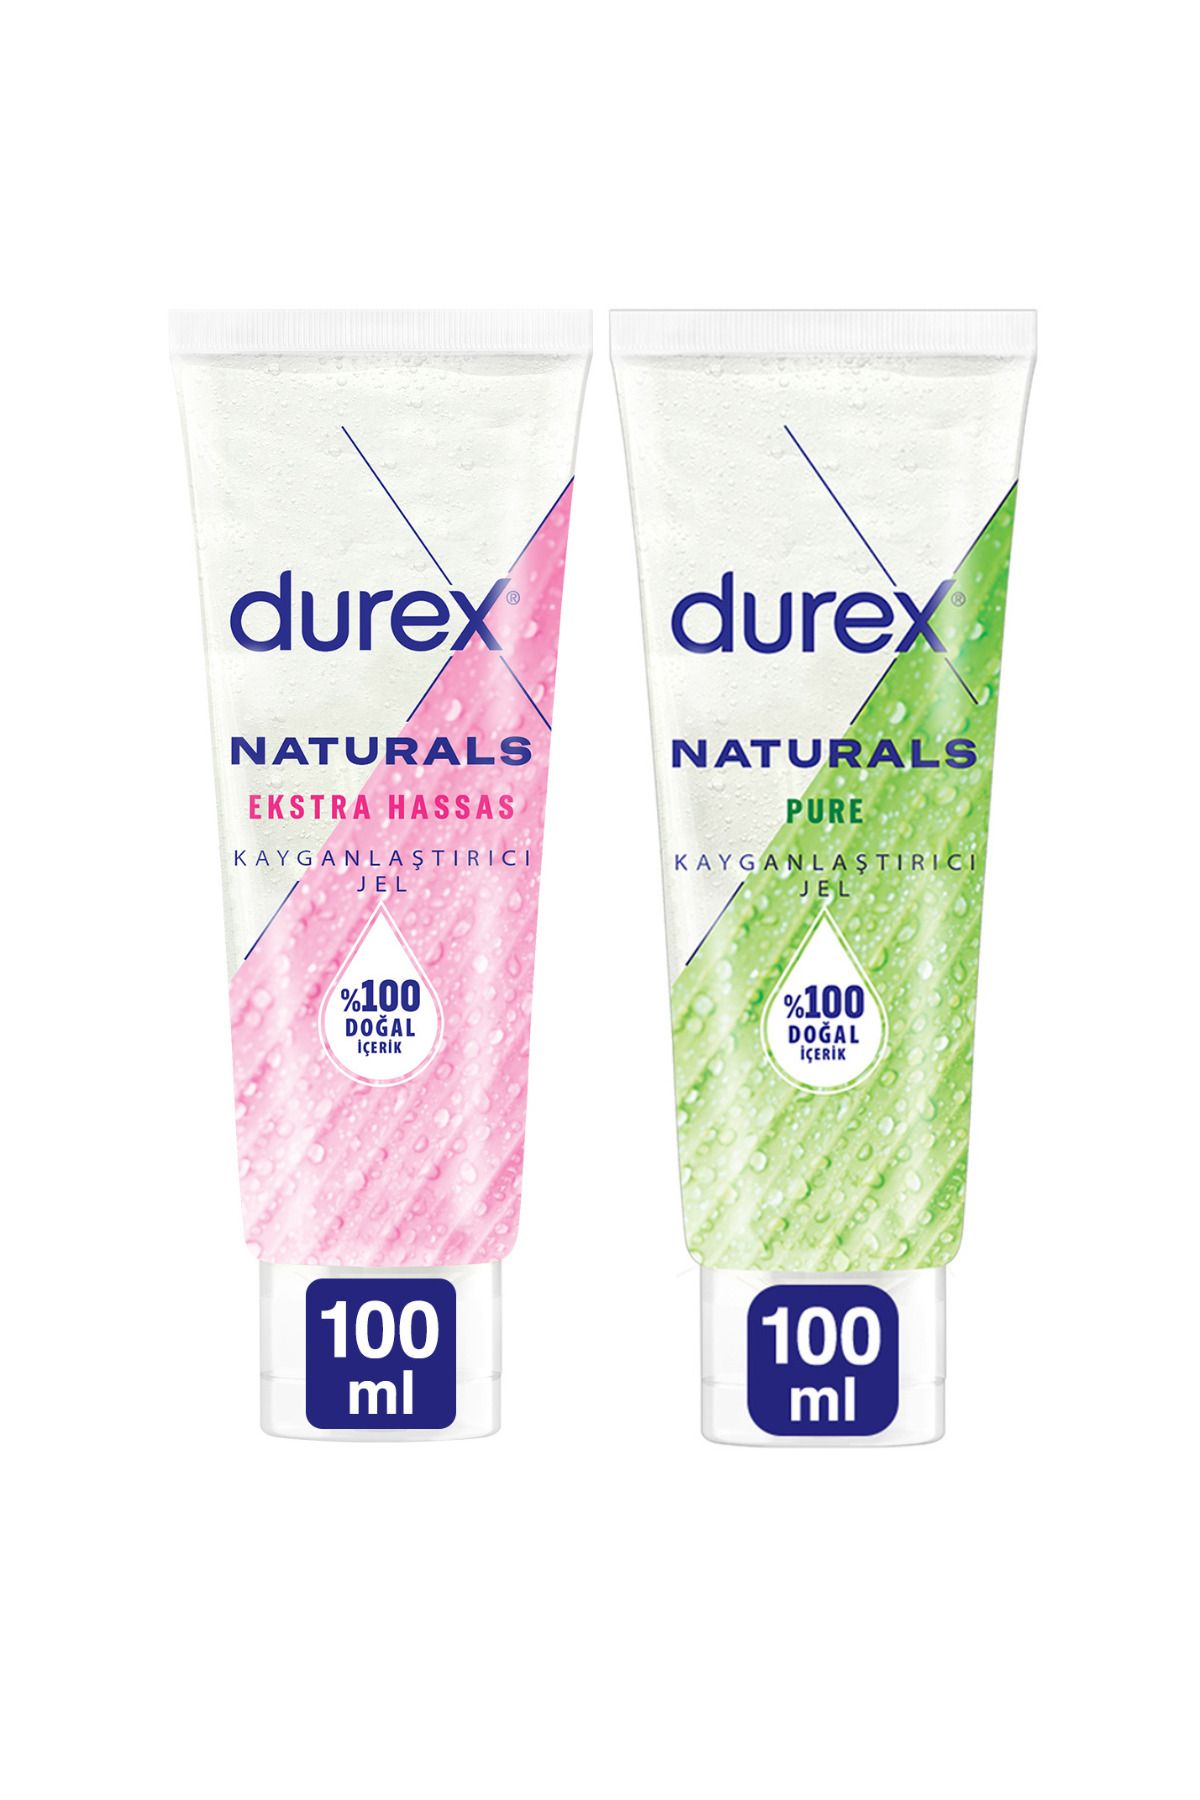 Durex Naturals Ekstra Hassas Kayganlaştırıcı Jel 100ml + Naturals Pure Kayganlaştırıcı Jel 100ml